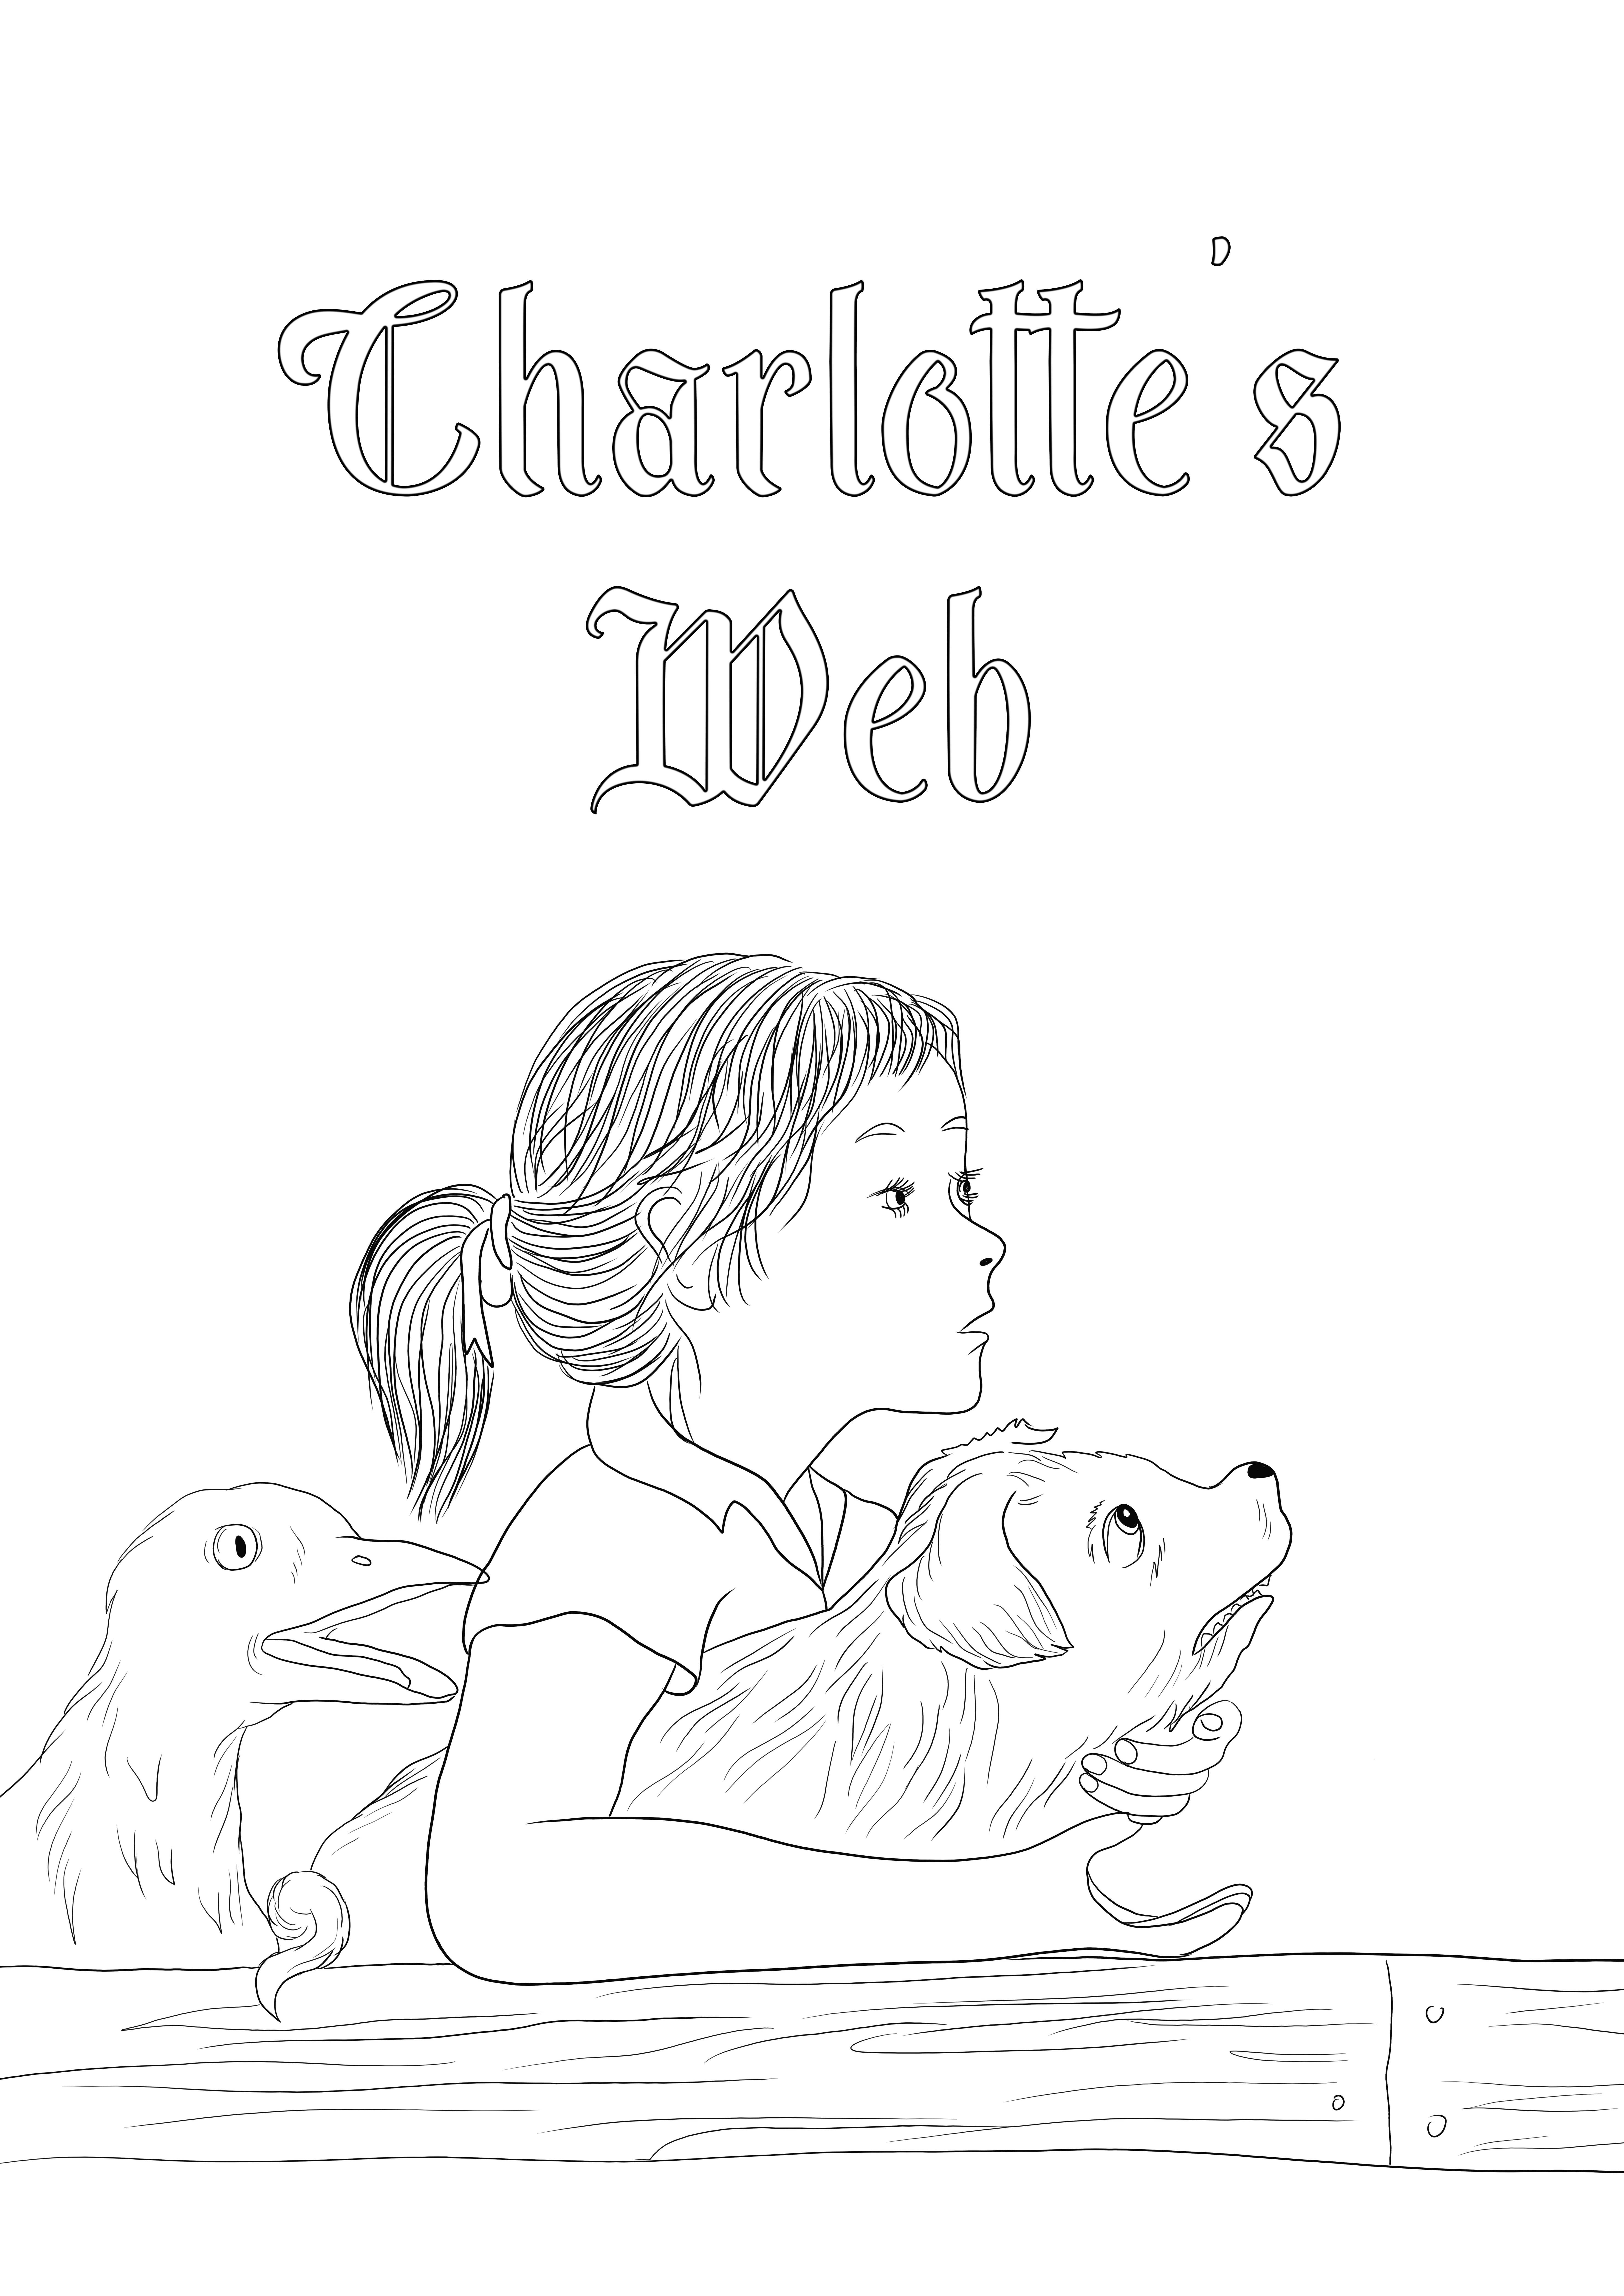 Stampabile gratuitamente dei personaggi Web di Charlotte da colorare e condividere con gli altri.